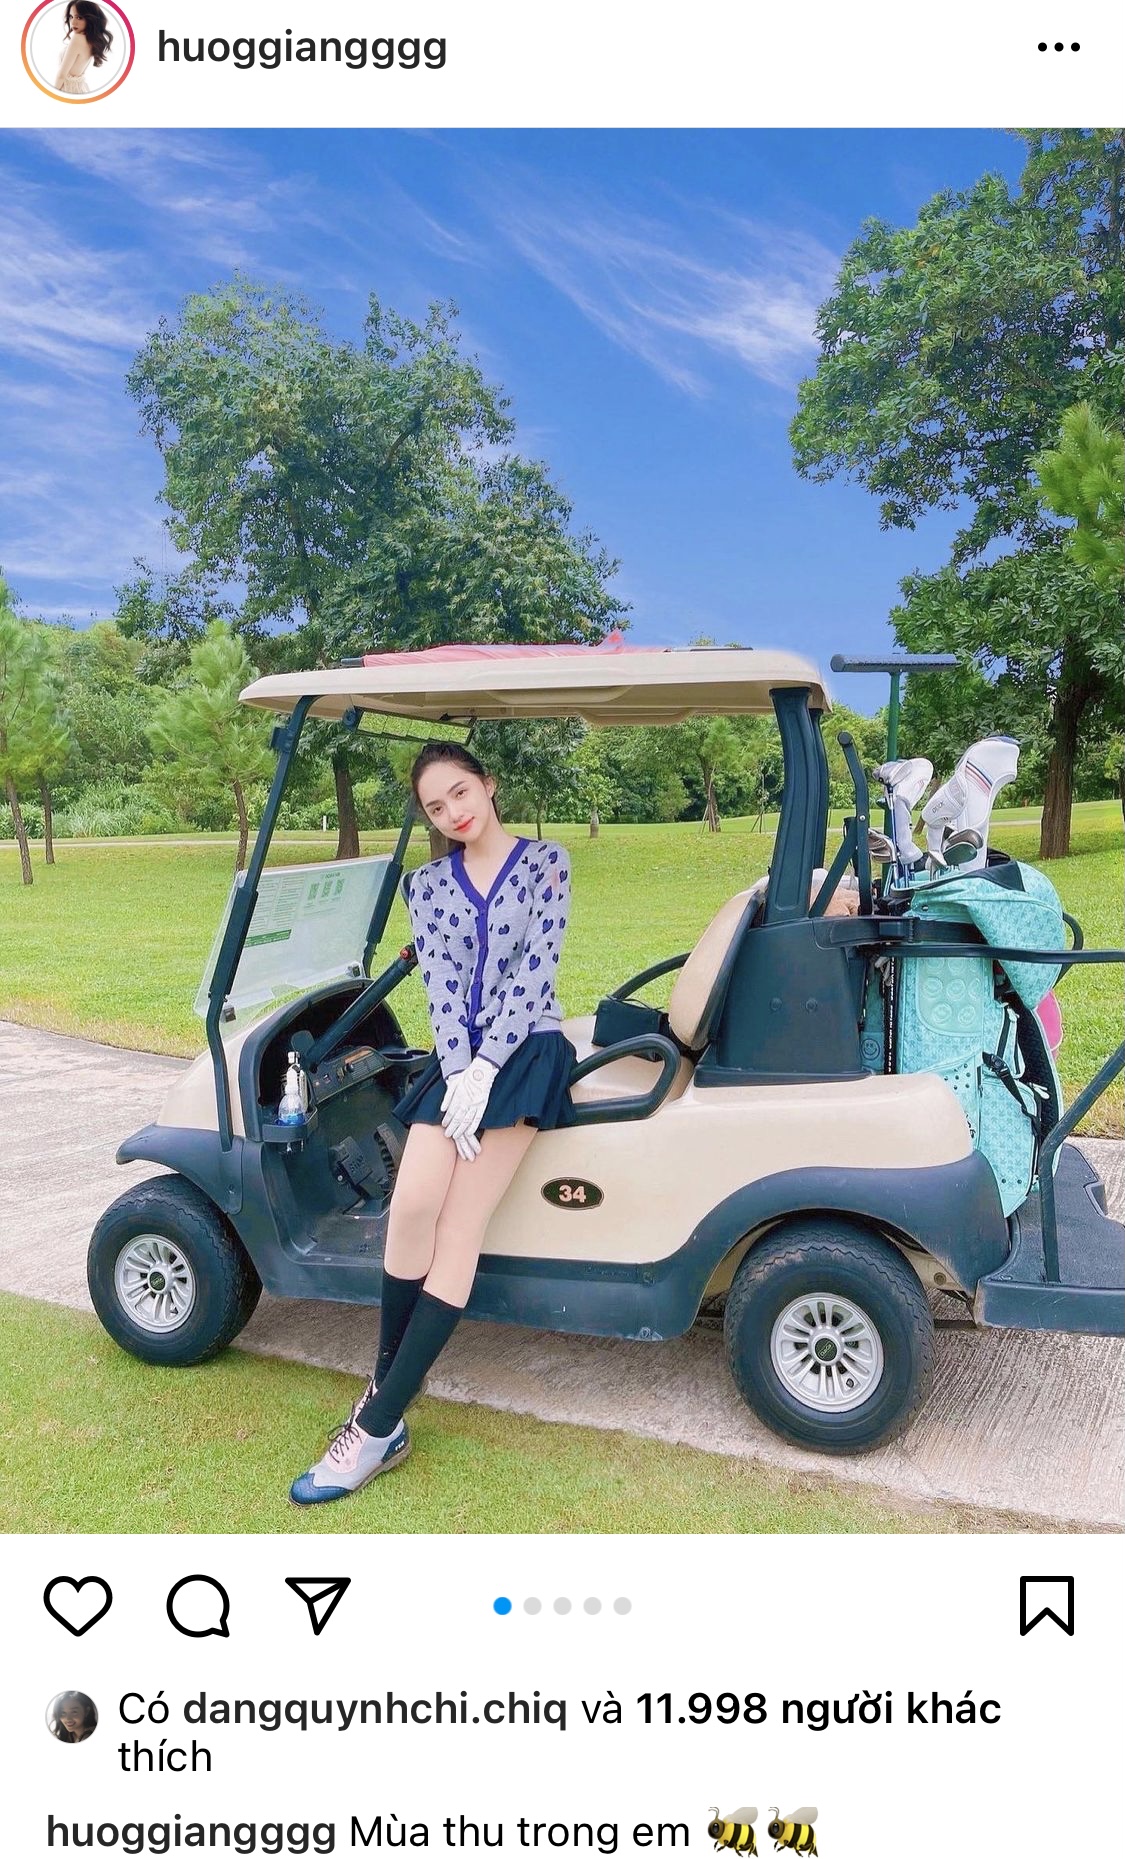 Hương Giang tích cực hoạt động MXH hậu comeback: Liên tục khoe ảnh tại sân golf, phong cách dạo này dịu dàng hẳn ra - Ảnh 2.